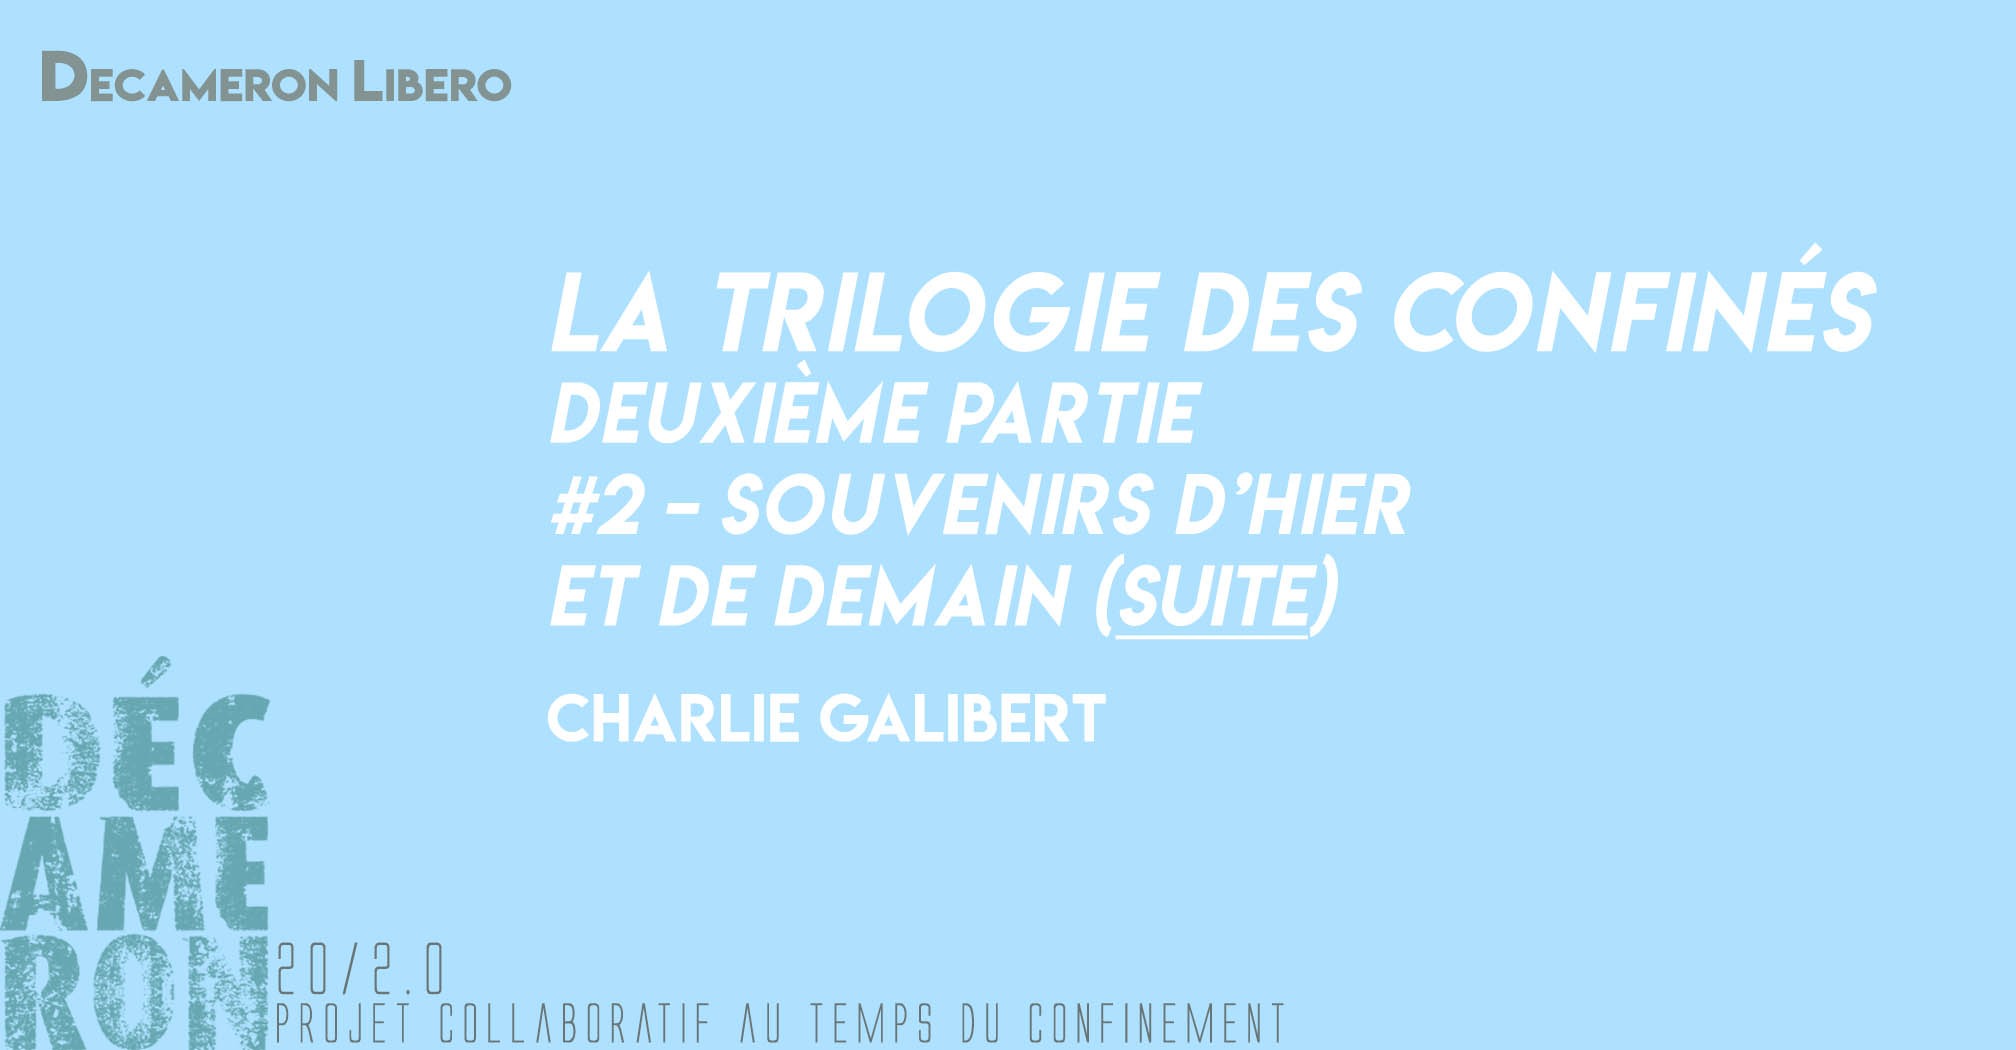 La Trilogie des Confinés [ #2 - Souvenirs d’hier et demain] (suite) - Charlie Galibert